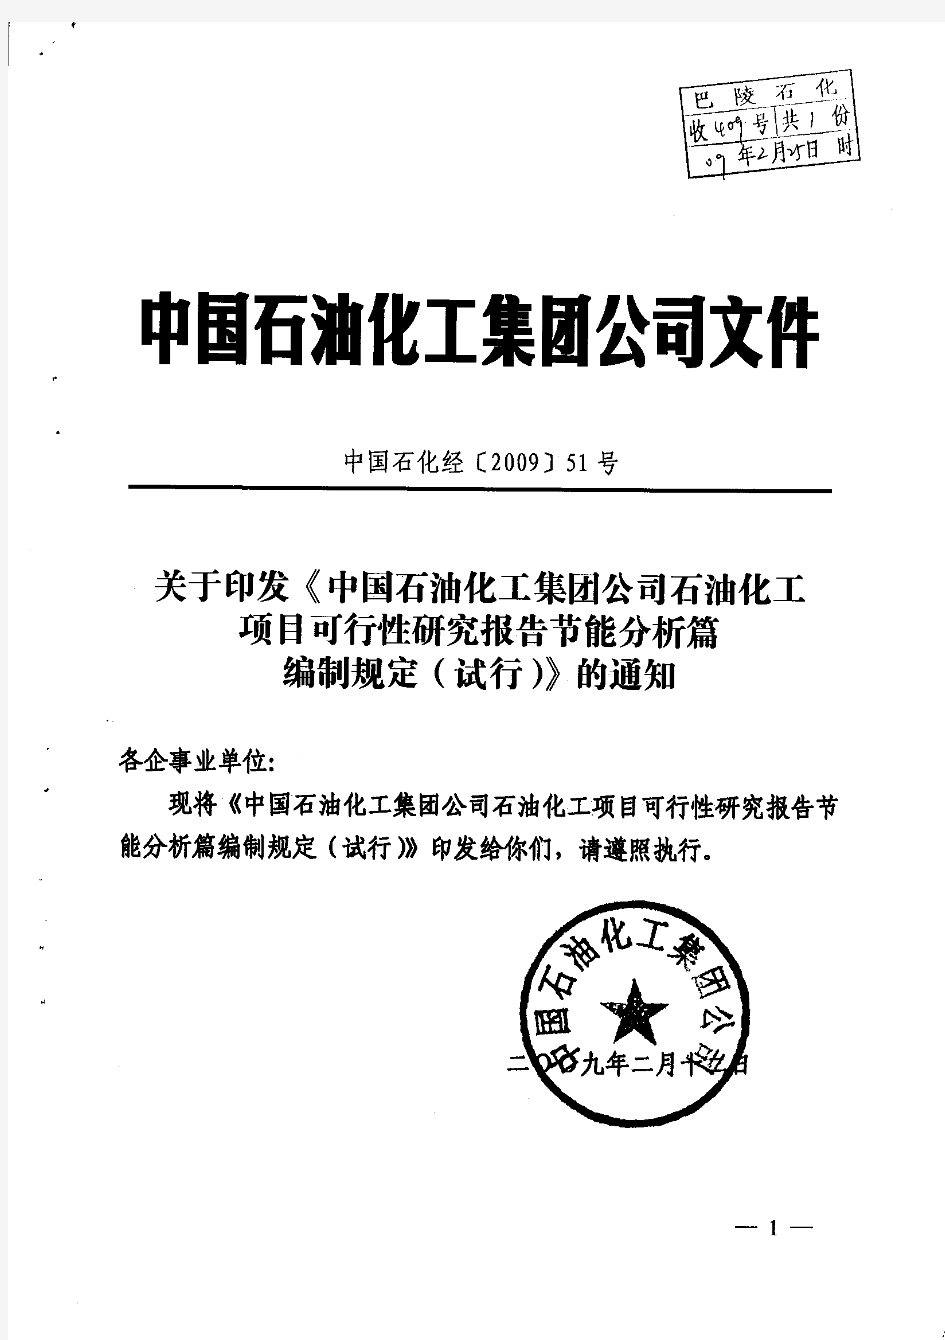 2009年版中国石化石油化工项目可行性研究报告节能分析篇编制规定【2009】51号